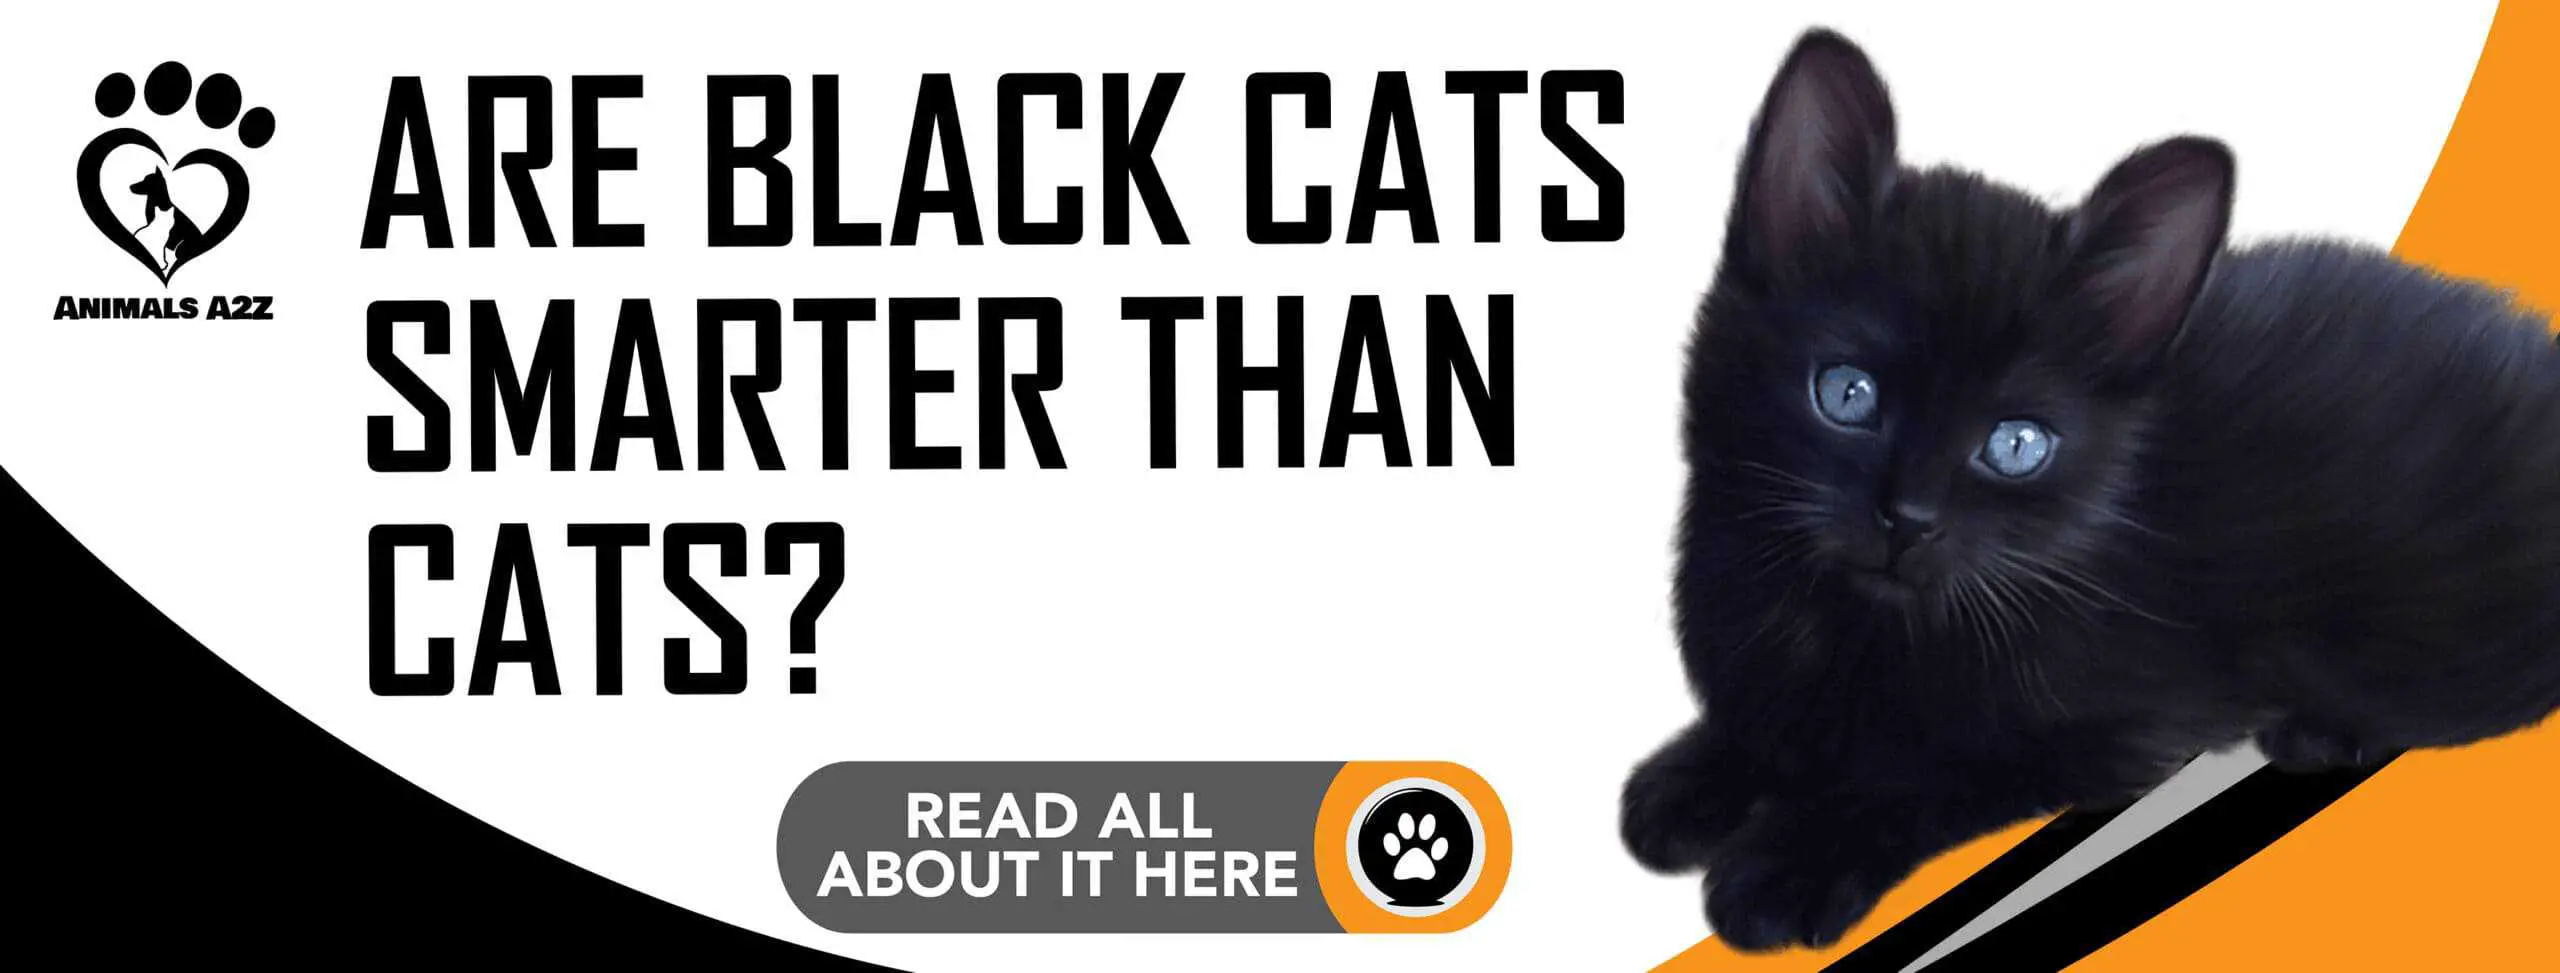 Les chats noirs sont-ils plus intelligents que les chats